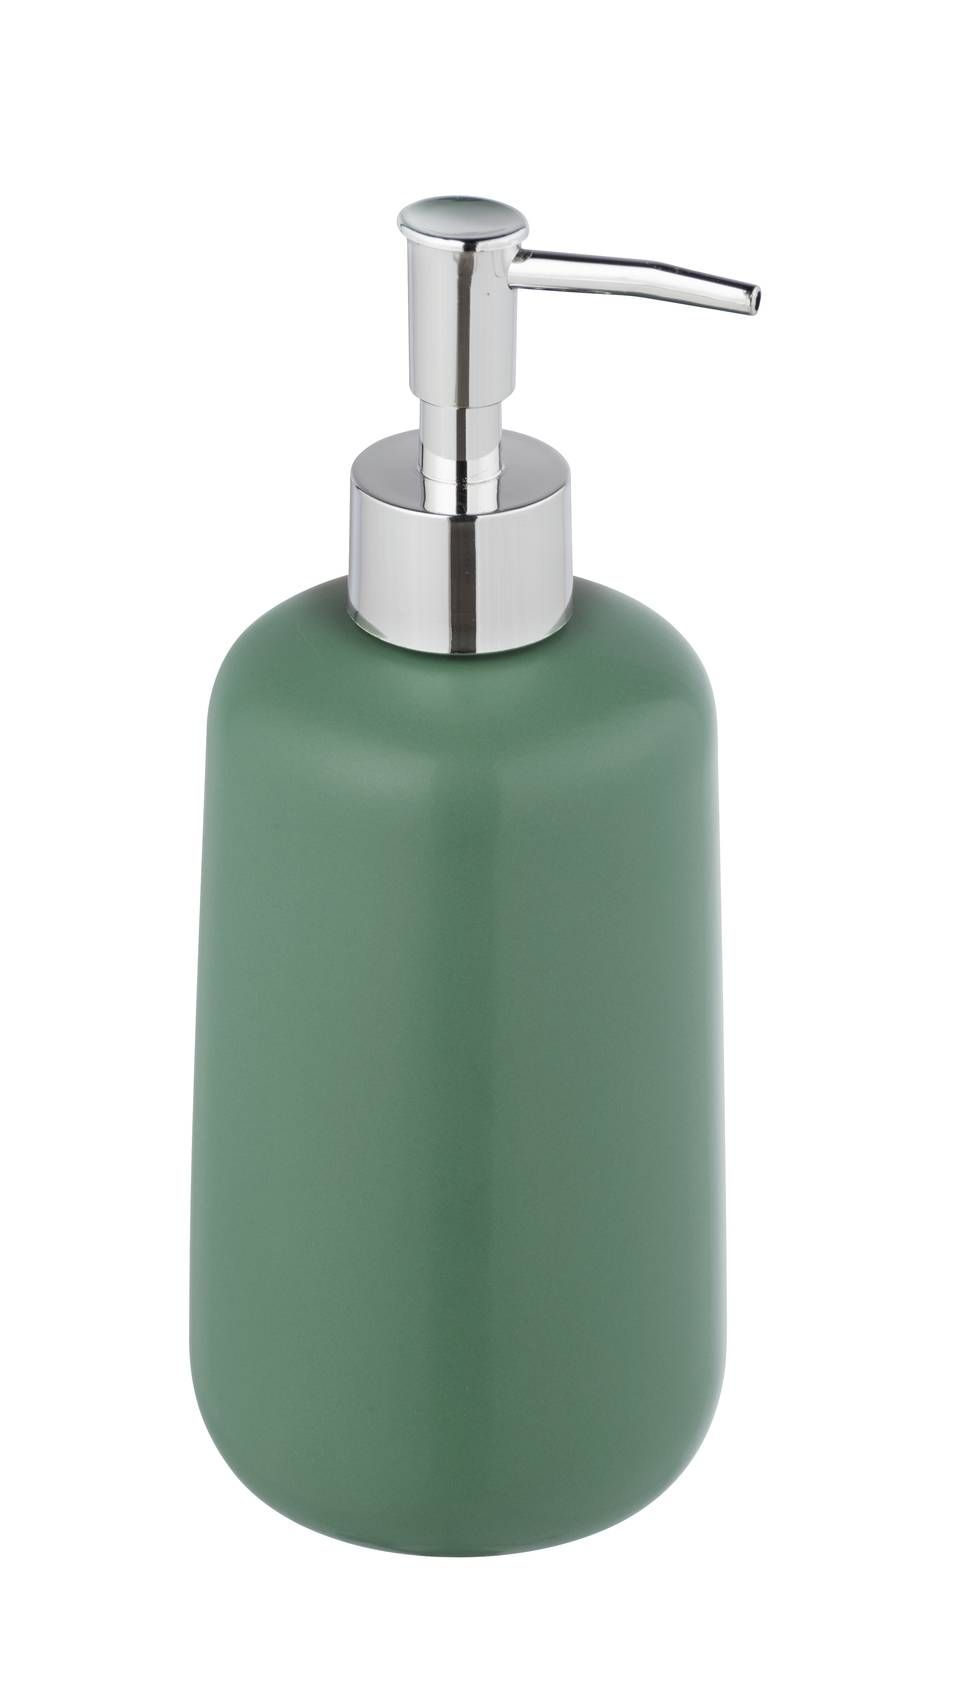 Zelený dávkovač mýdla, keramický, 20 cm, Allstar - EDAXO.CZ s.r.o.